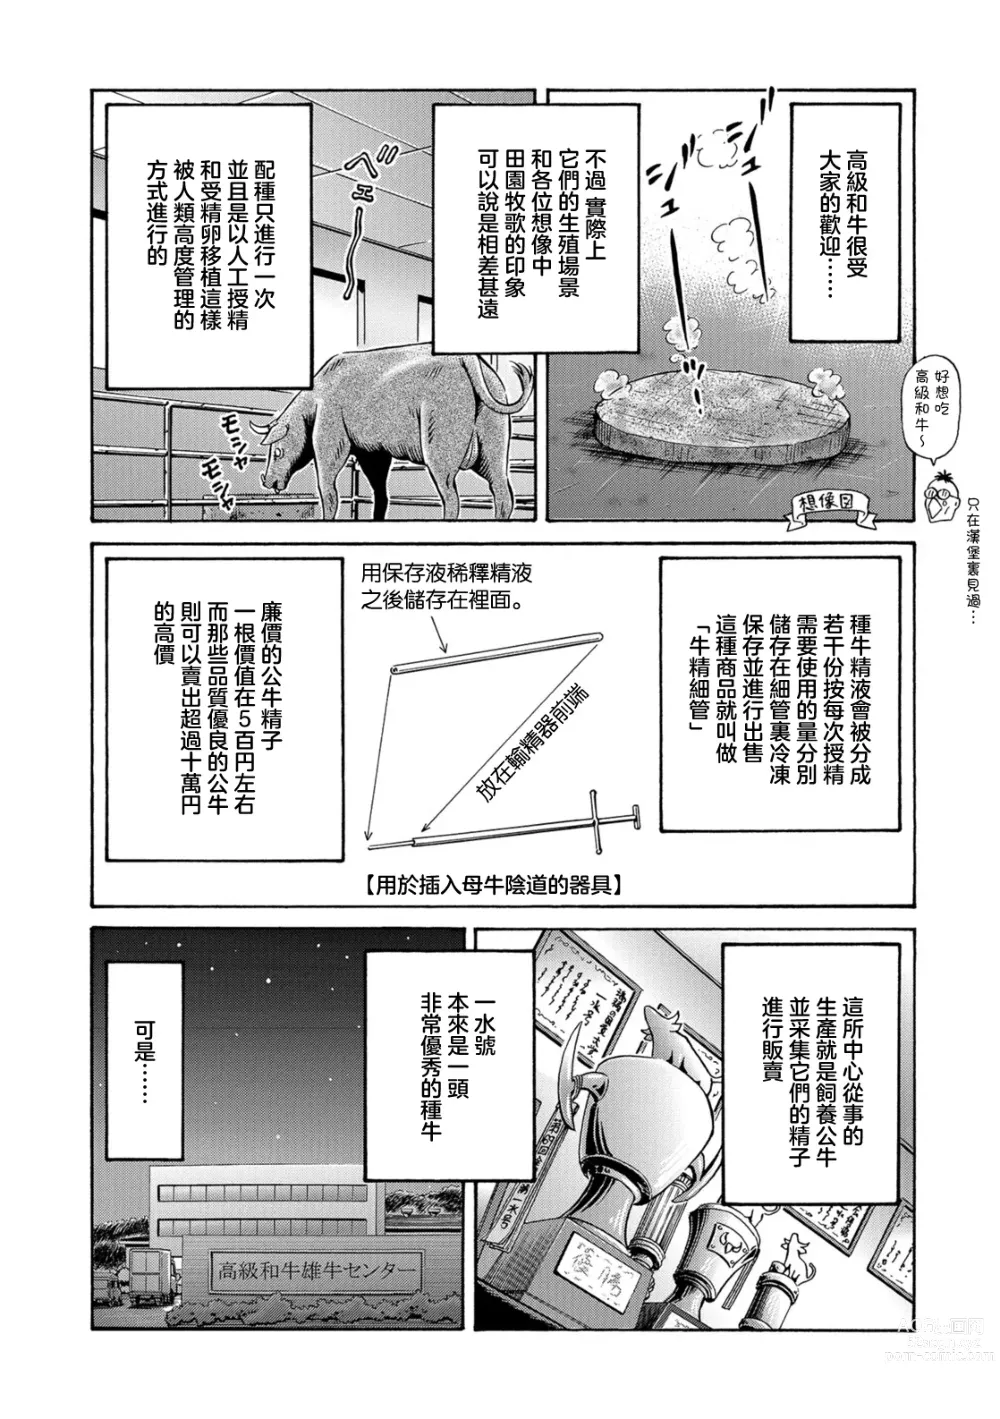 Page 6 of manga Usi no Hitotsuki